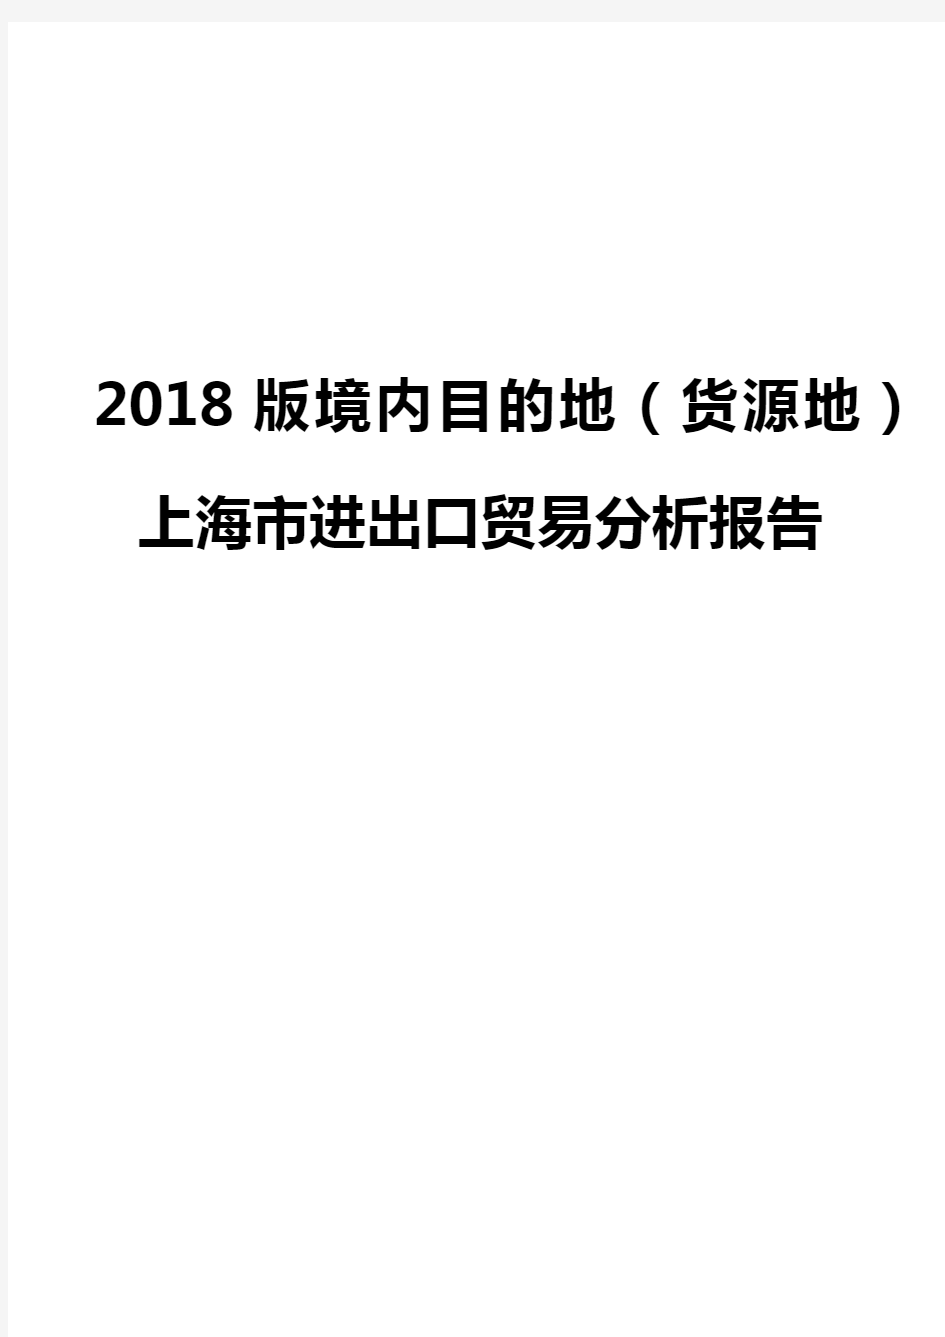 2018版境内目的地(货源地)上海市进出口贸易分析报告